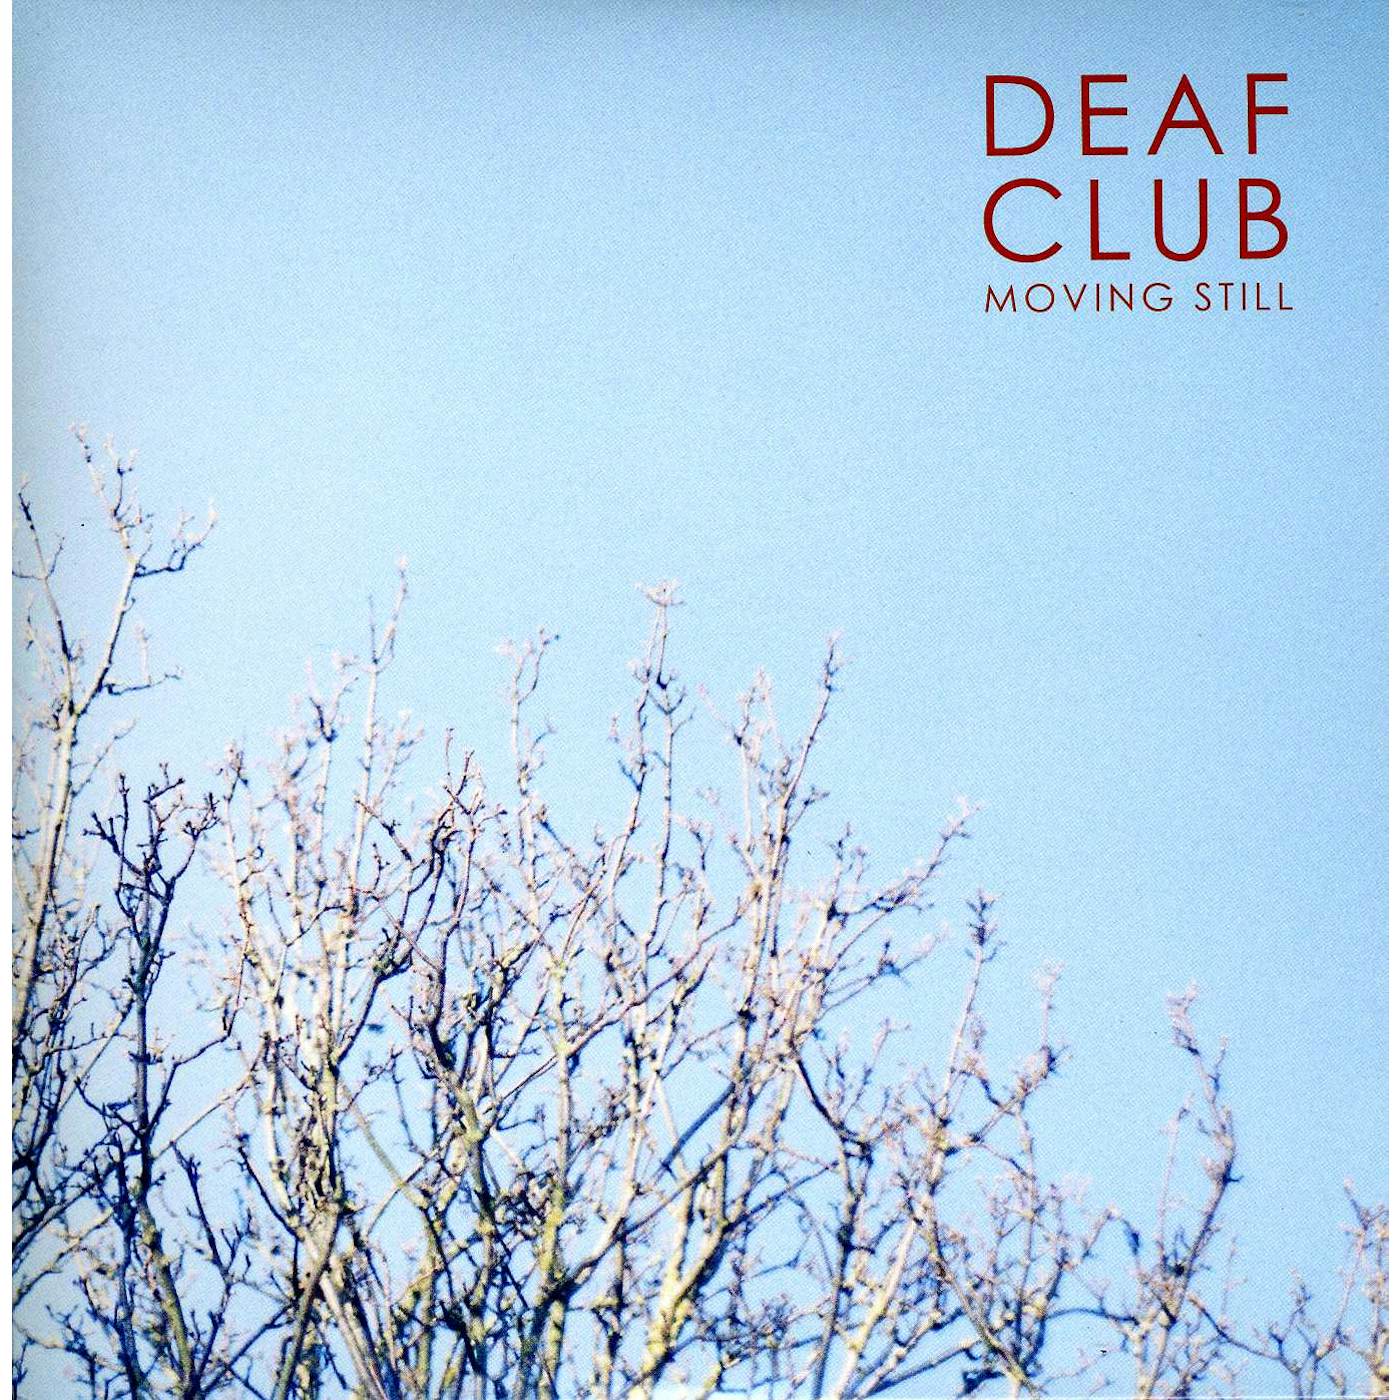 Deaf Club MOVING STILL / LIGHTS Vinyl Record